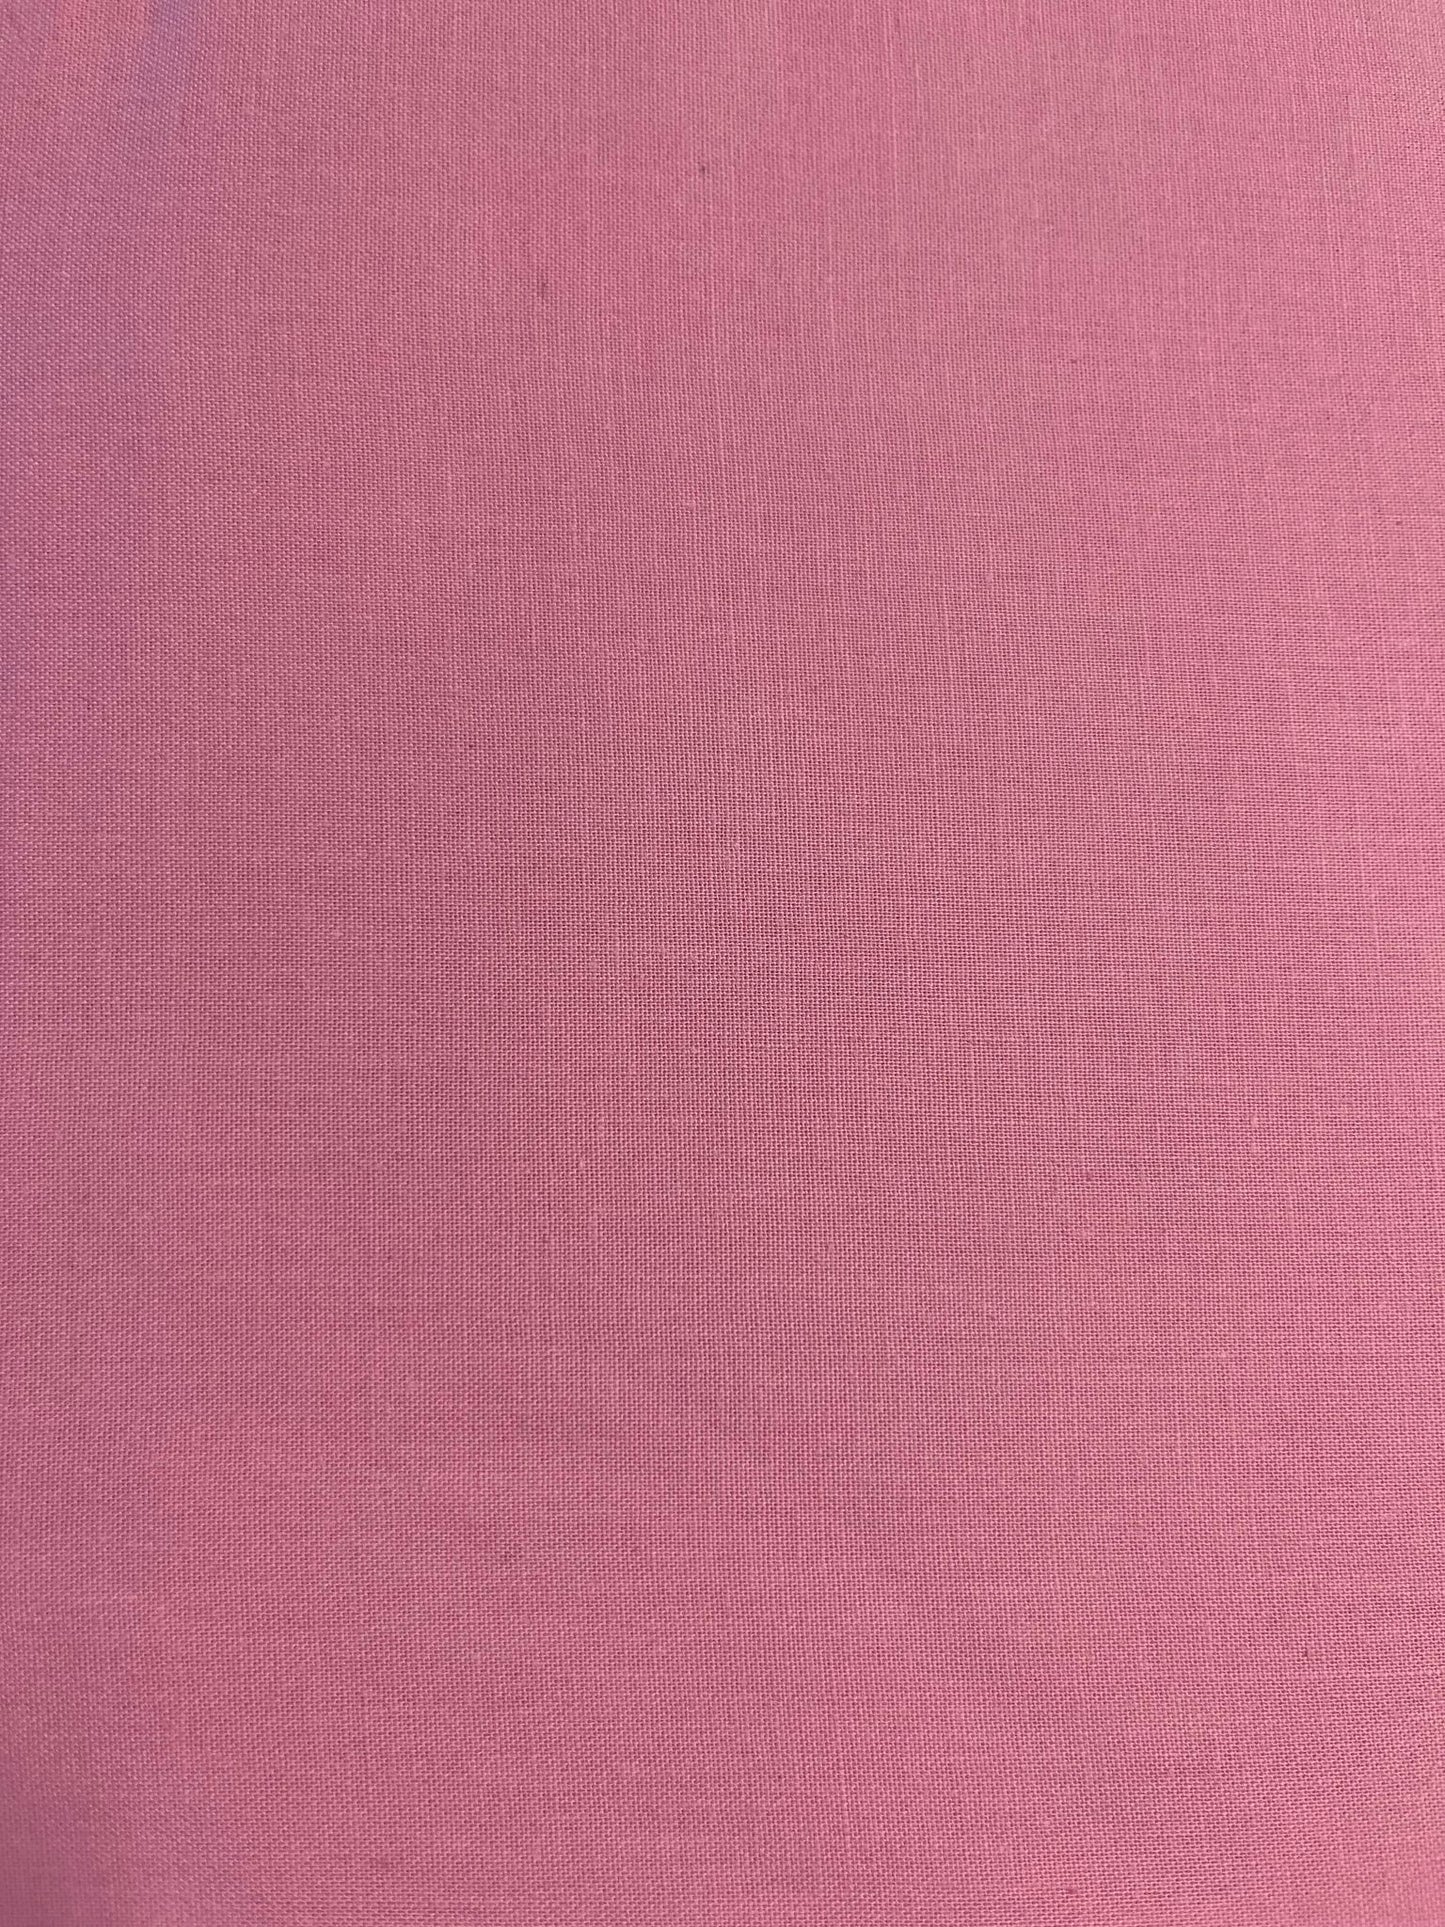 Tissu coton rose